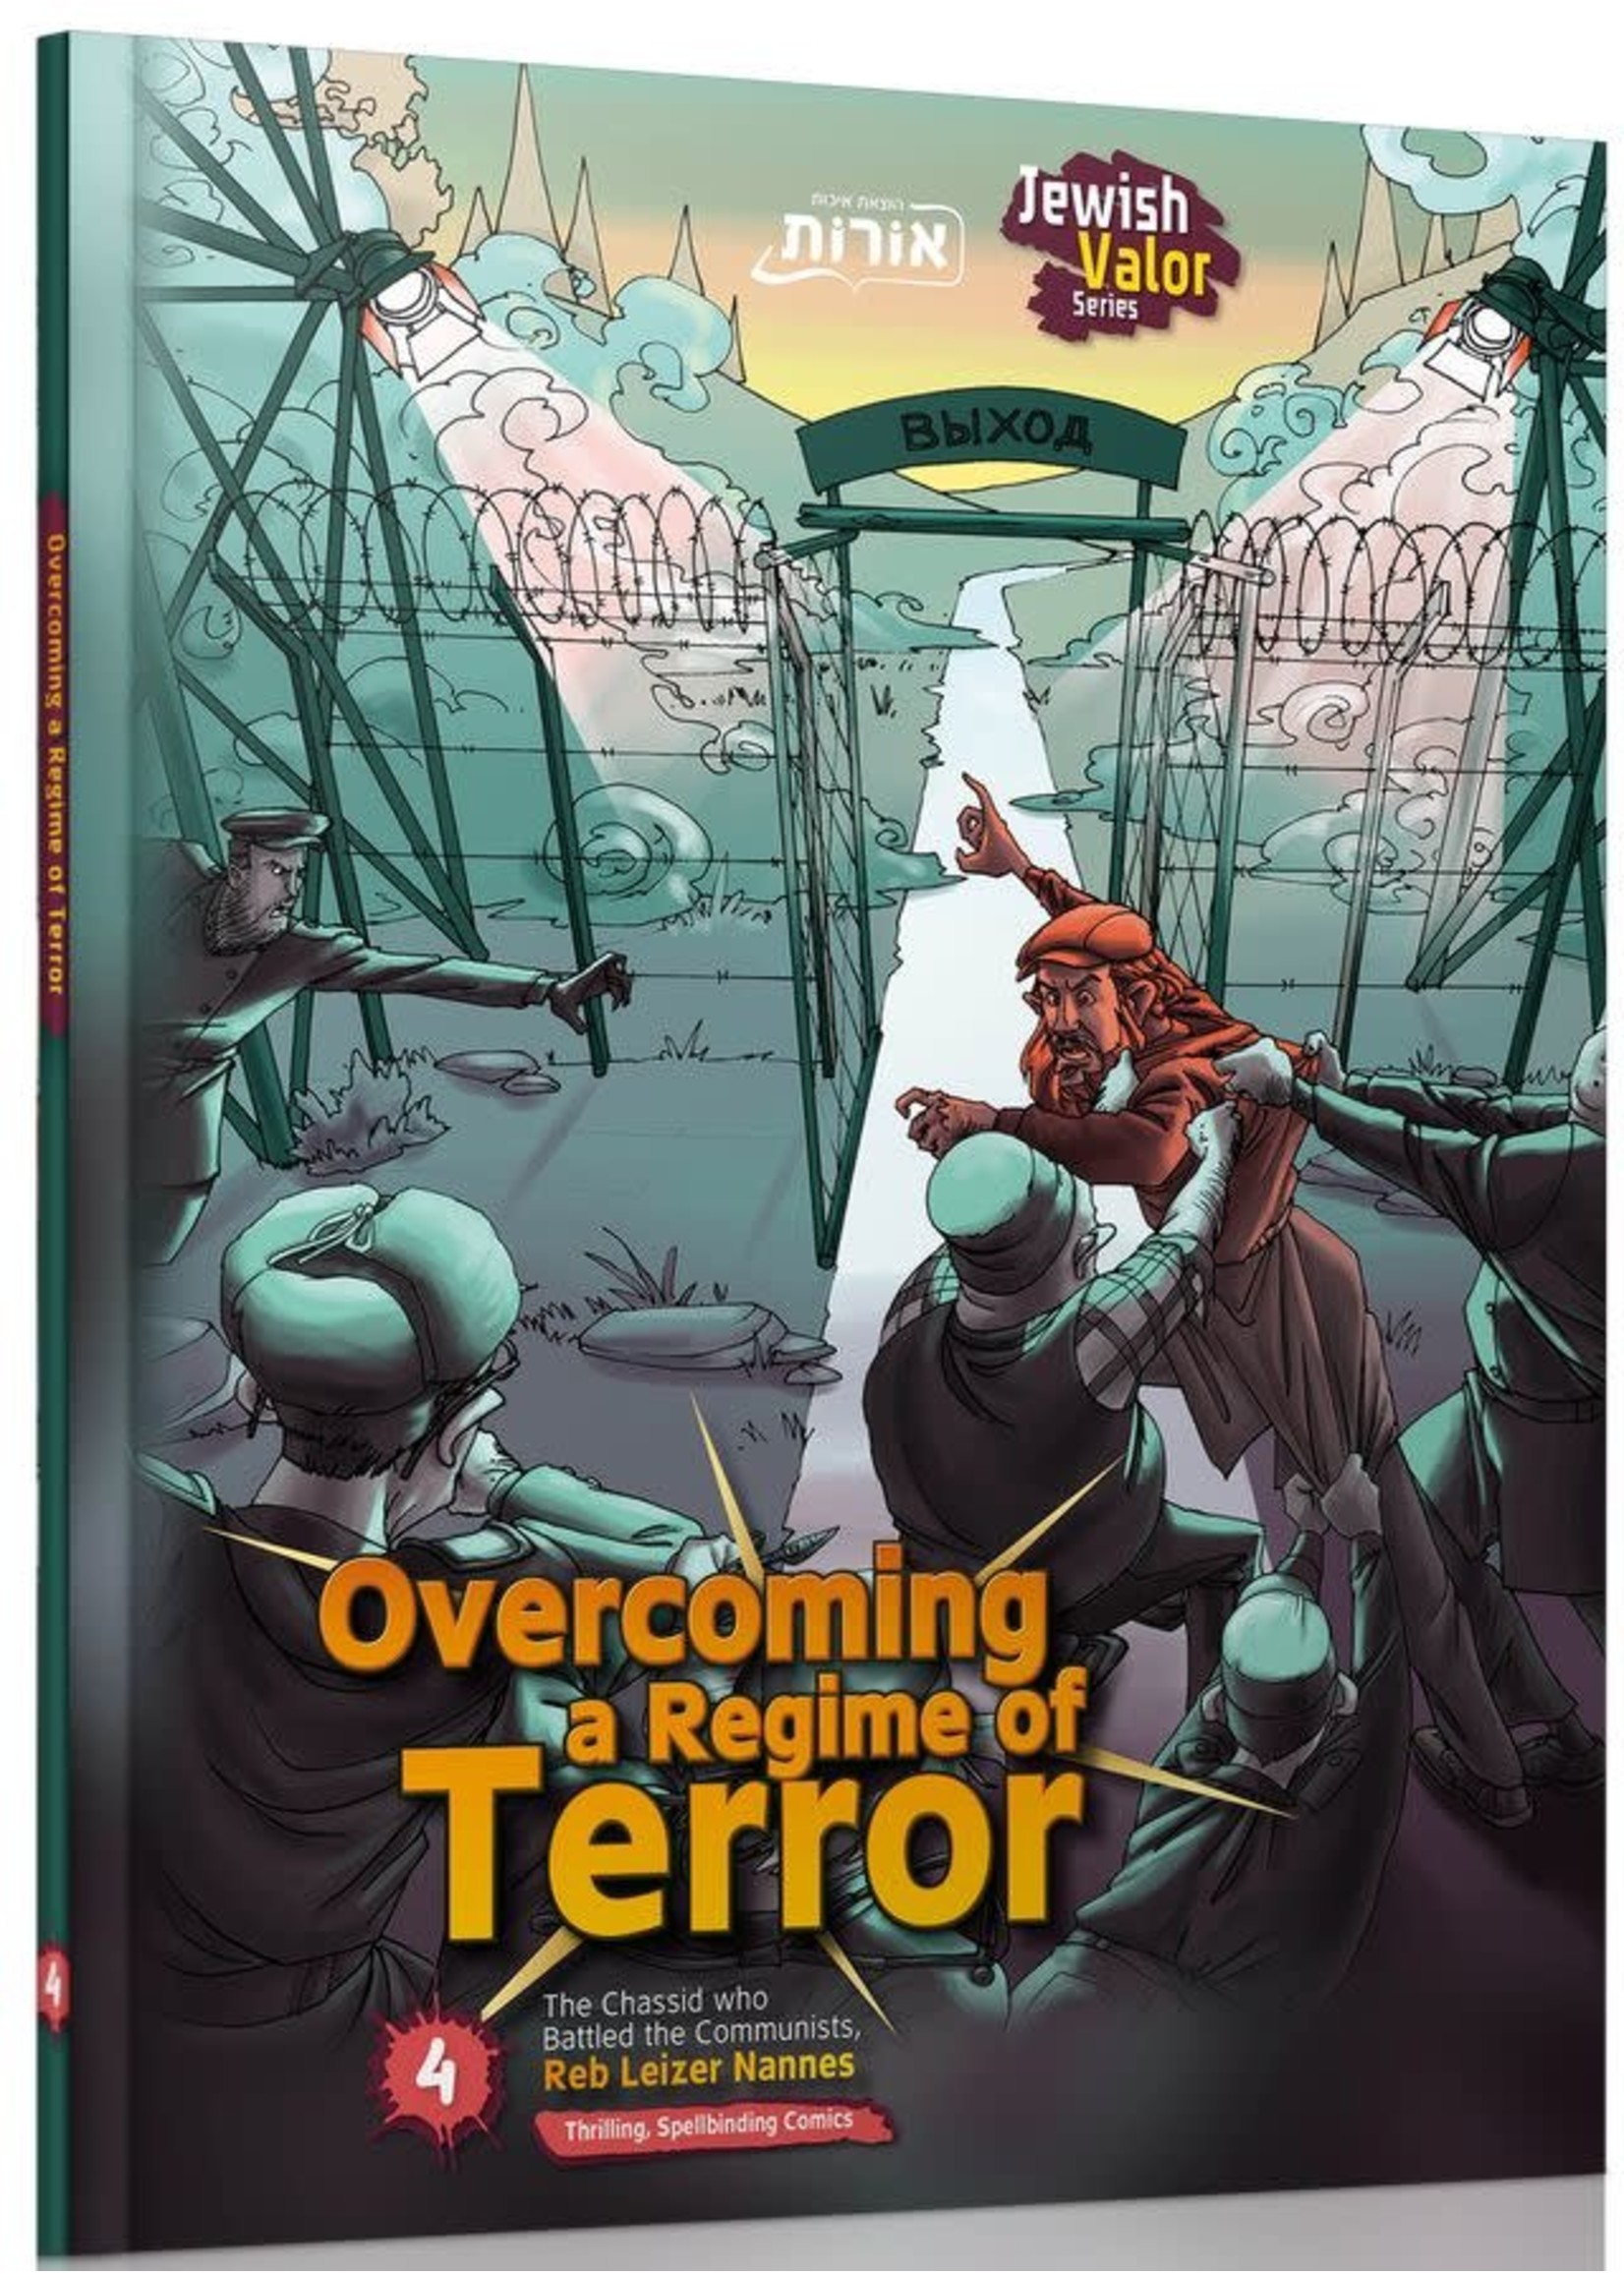 OVERCOMING A REGIME OF TERROR #4